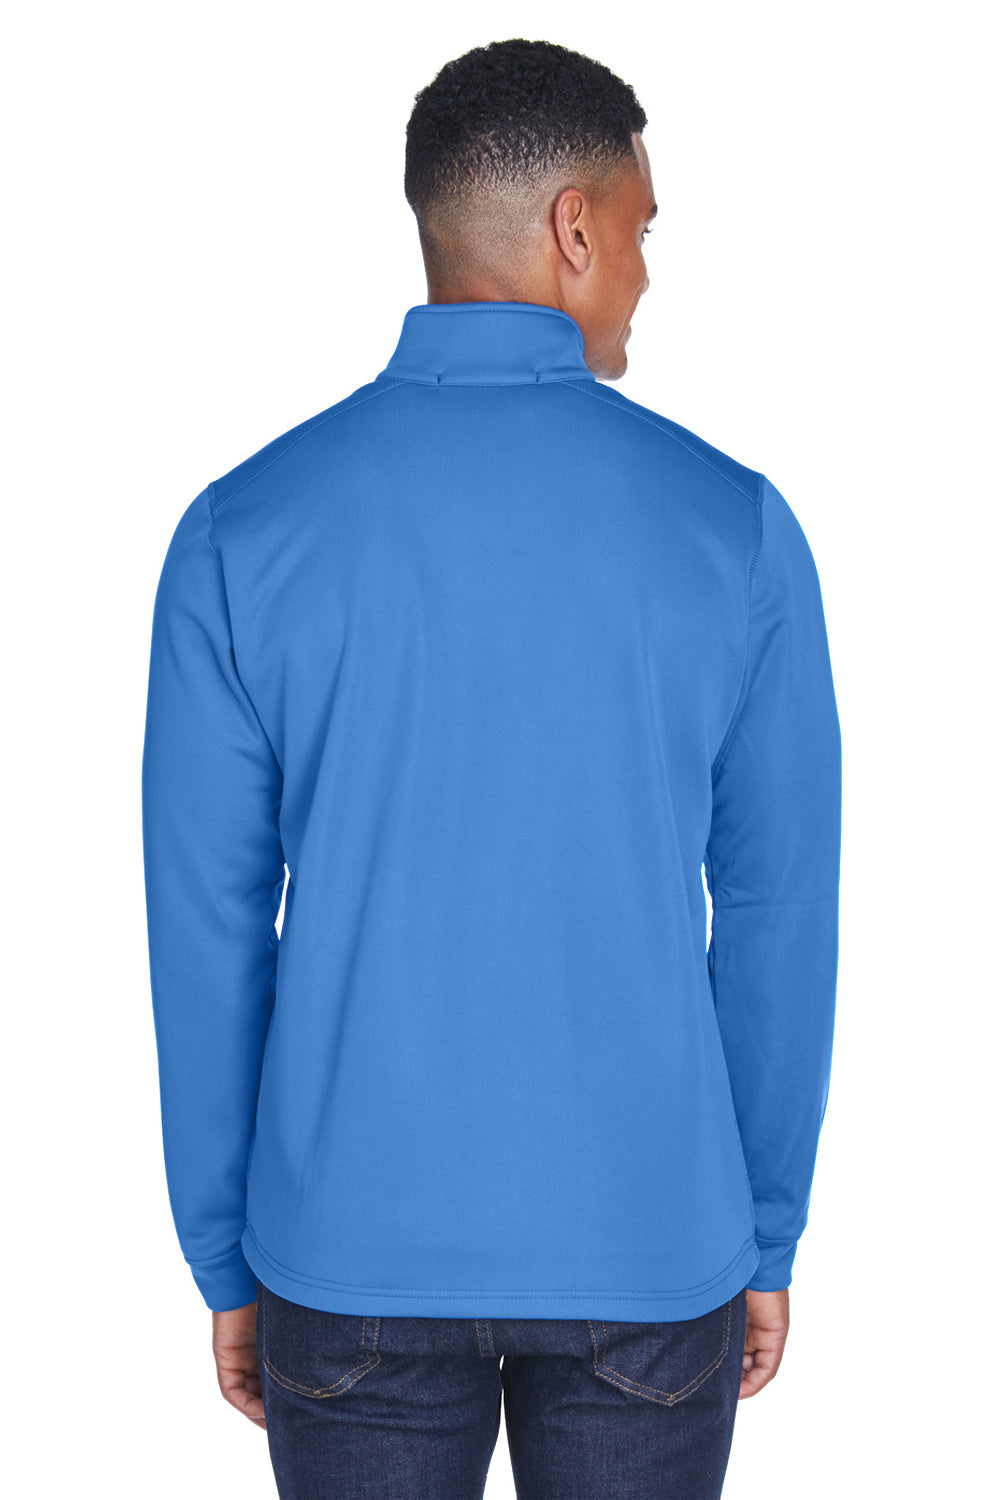 Devon & Jones DG796 Mens Newbury Fleece Full Zip Sweatshirt French Blue Back